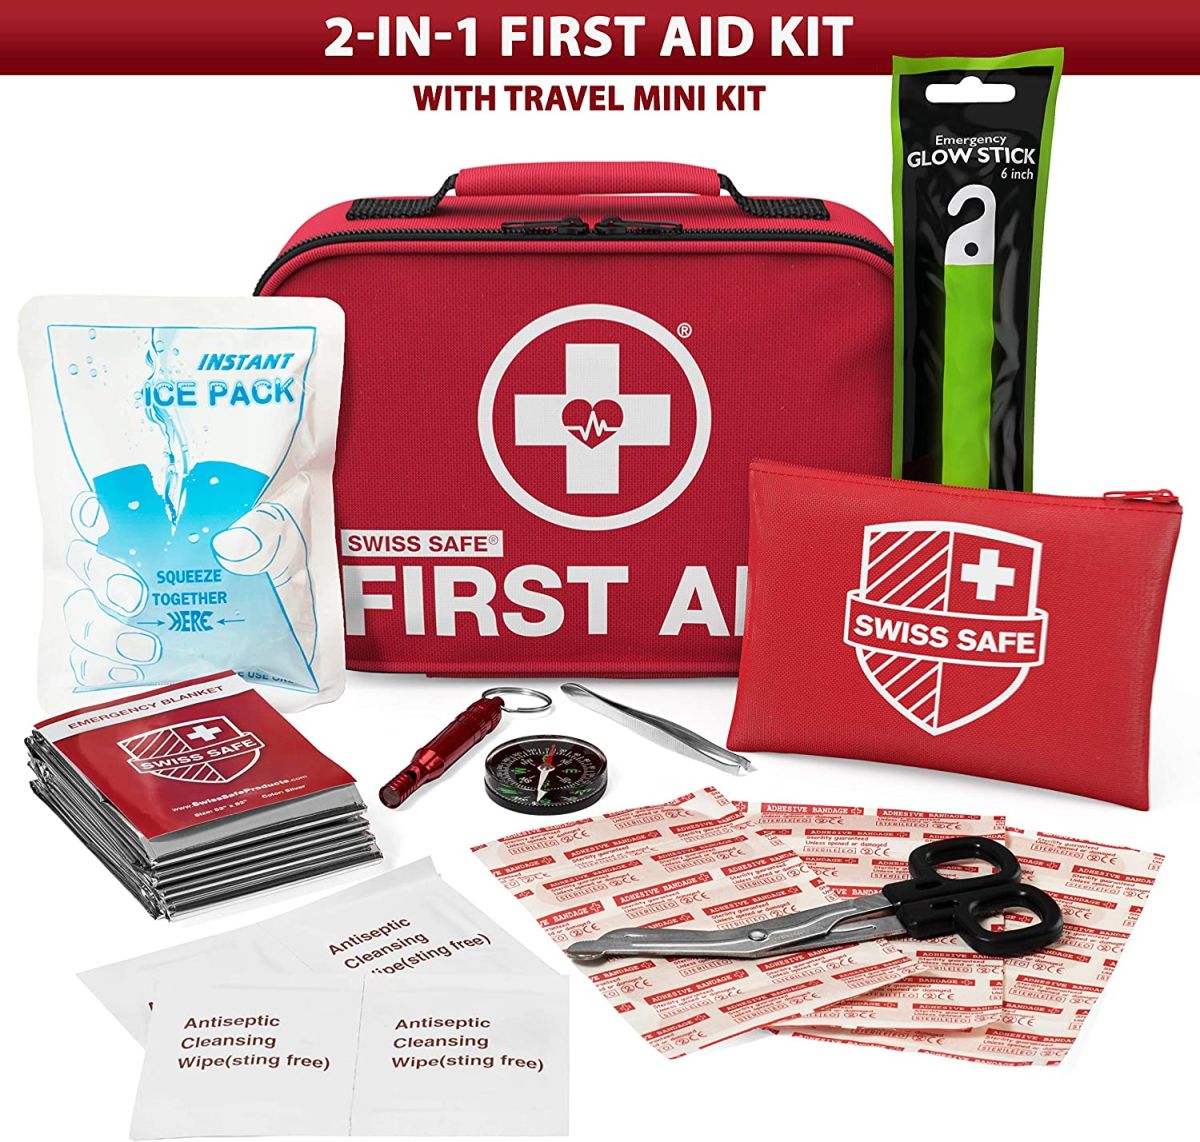 Kit de primeros auxilios Swiss Safe. / Foto: Amazon.